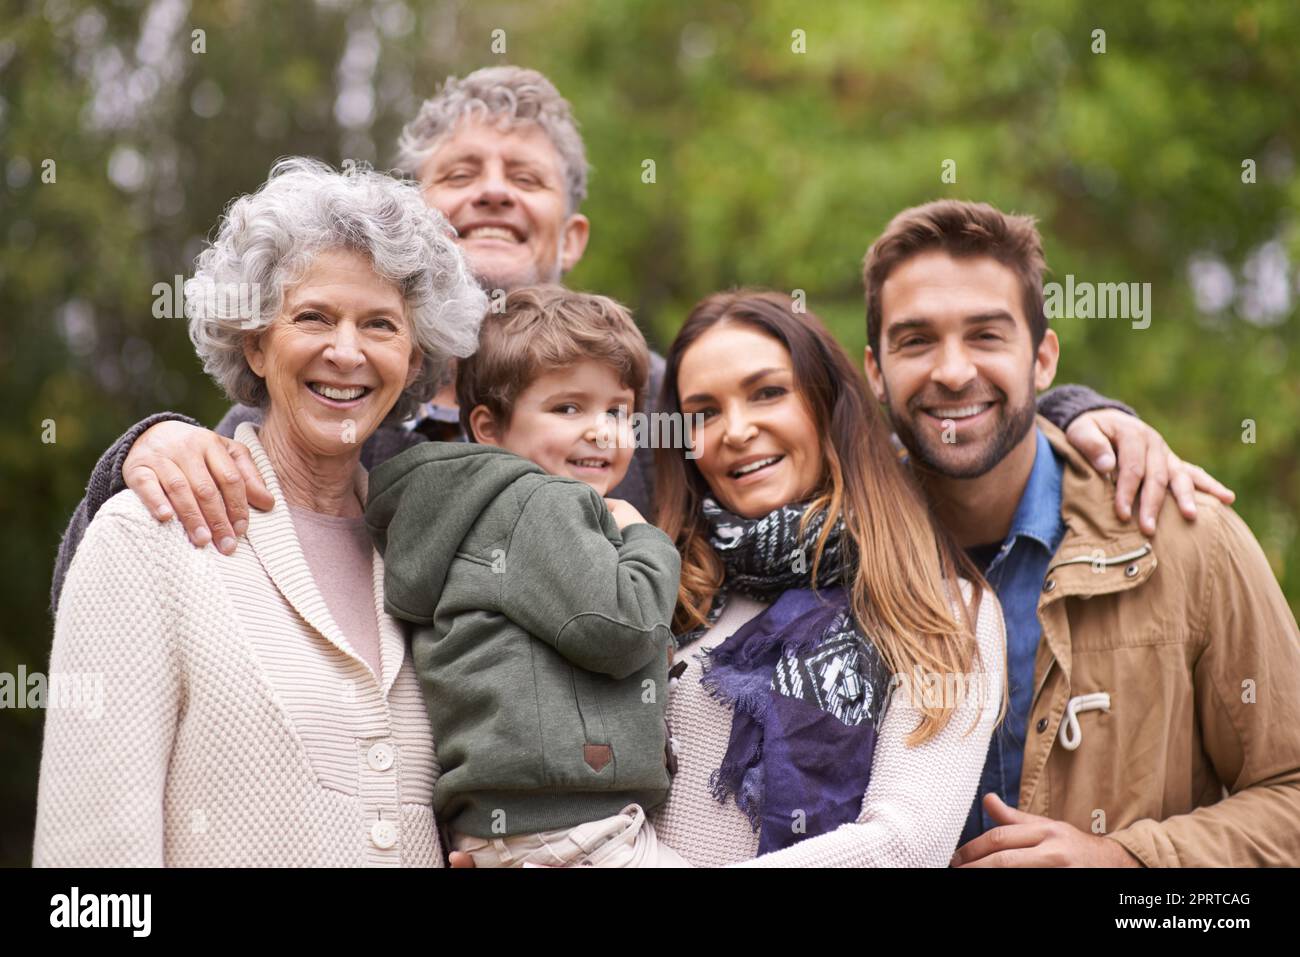 Familie ist der größte Segen des Lebens. Porträt einer glücklichen Familie aus mehreren Generationen, die im Freien steht. Stockfoto